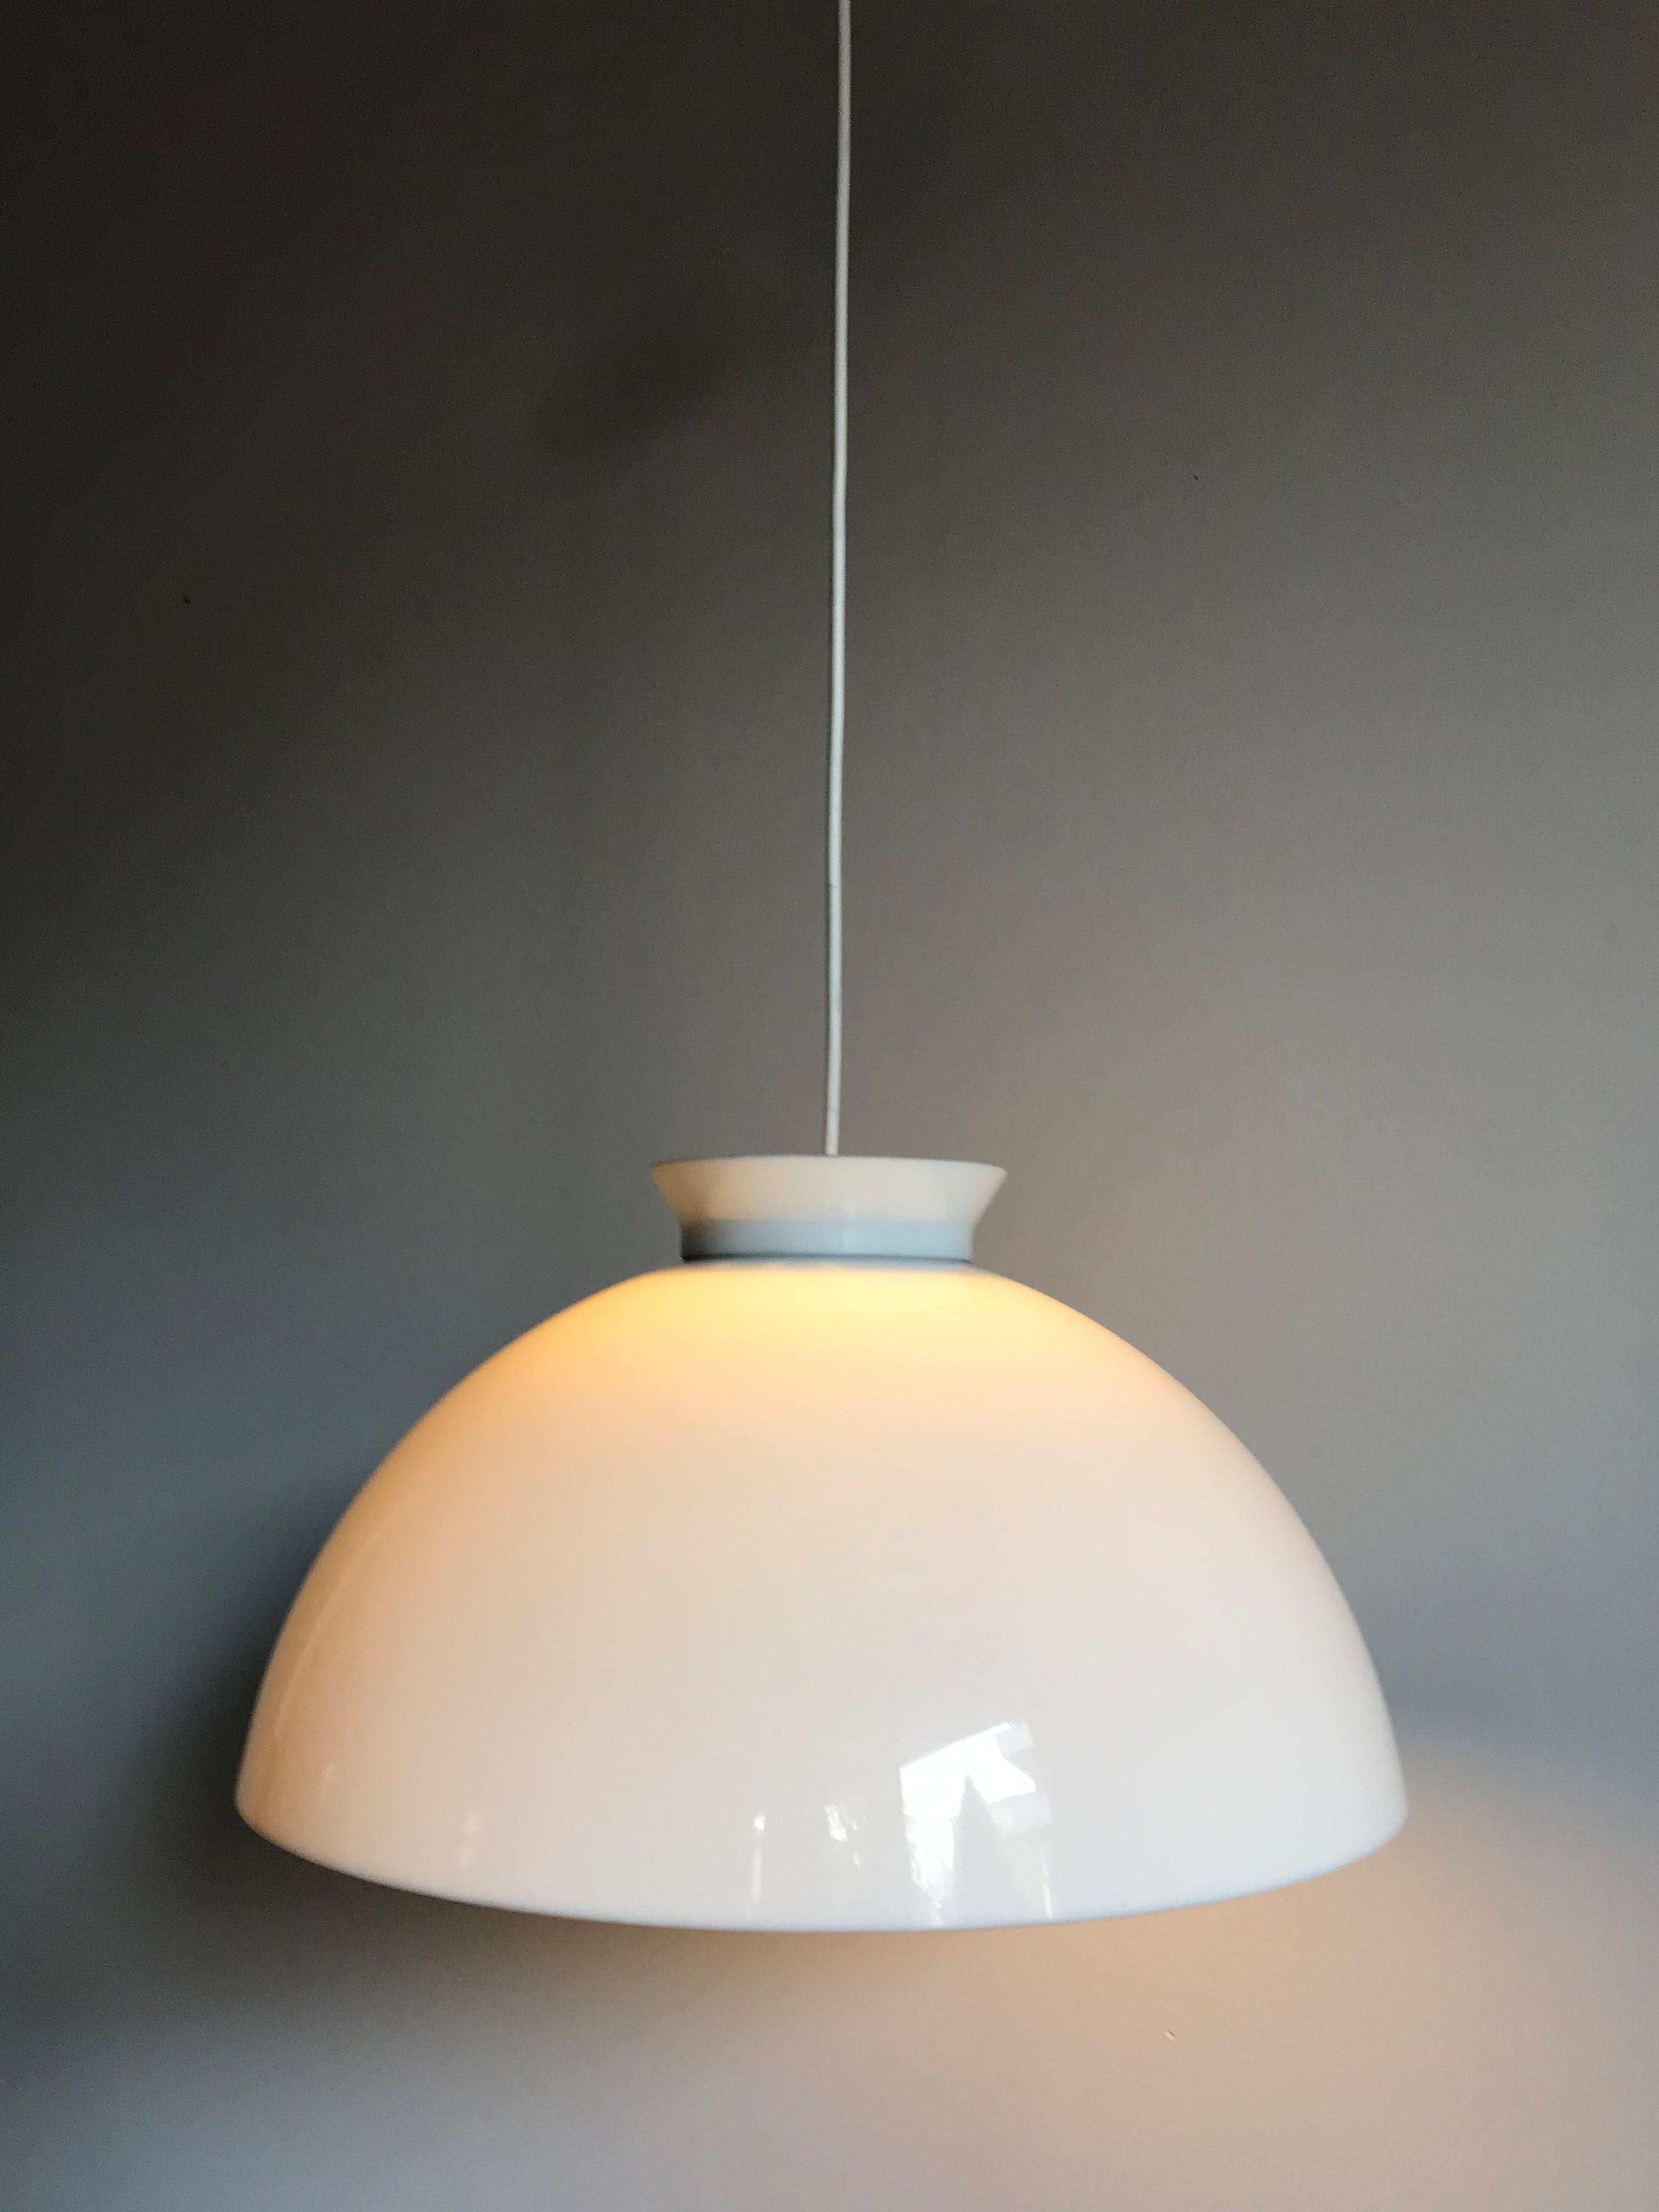 Lampe pendante italienne modèle KD6 conçue par le célèbre designer Achille & Pier Giacomo Castiglioni pour Kartell en 1959, diffuseur en méthacrylate opale.

Veuillez noter que la lampe est originale de l'époque et qu'elle présente des signes